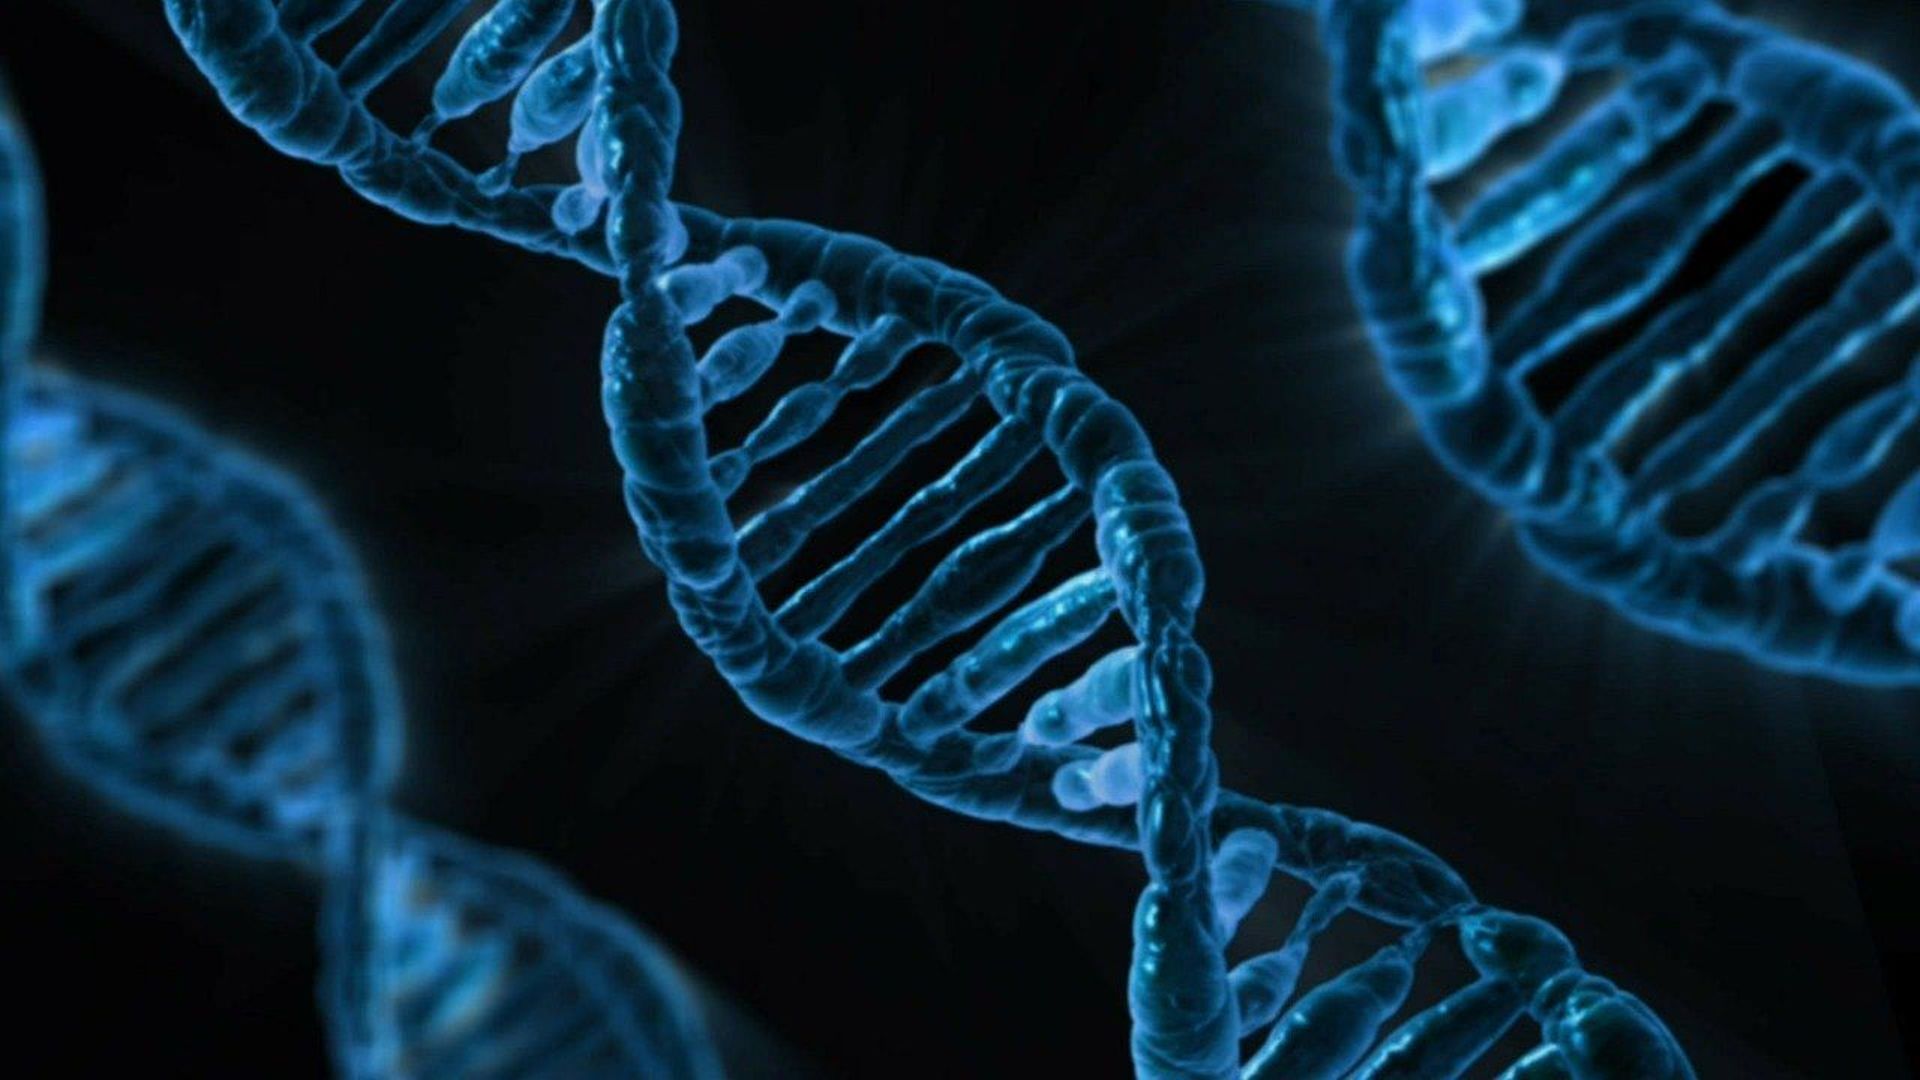 Sciences et enjeux éthiques: seriez-vous prêts à partager les données de votre ADN ?